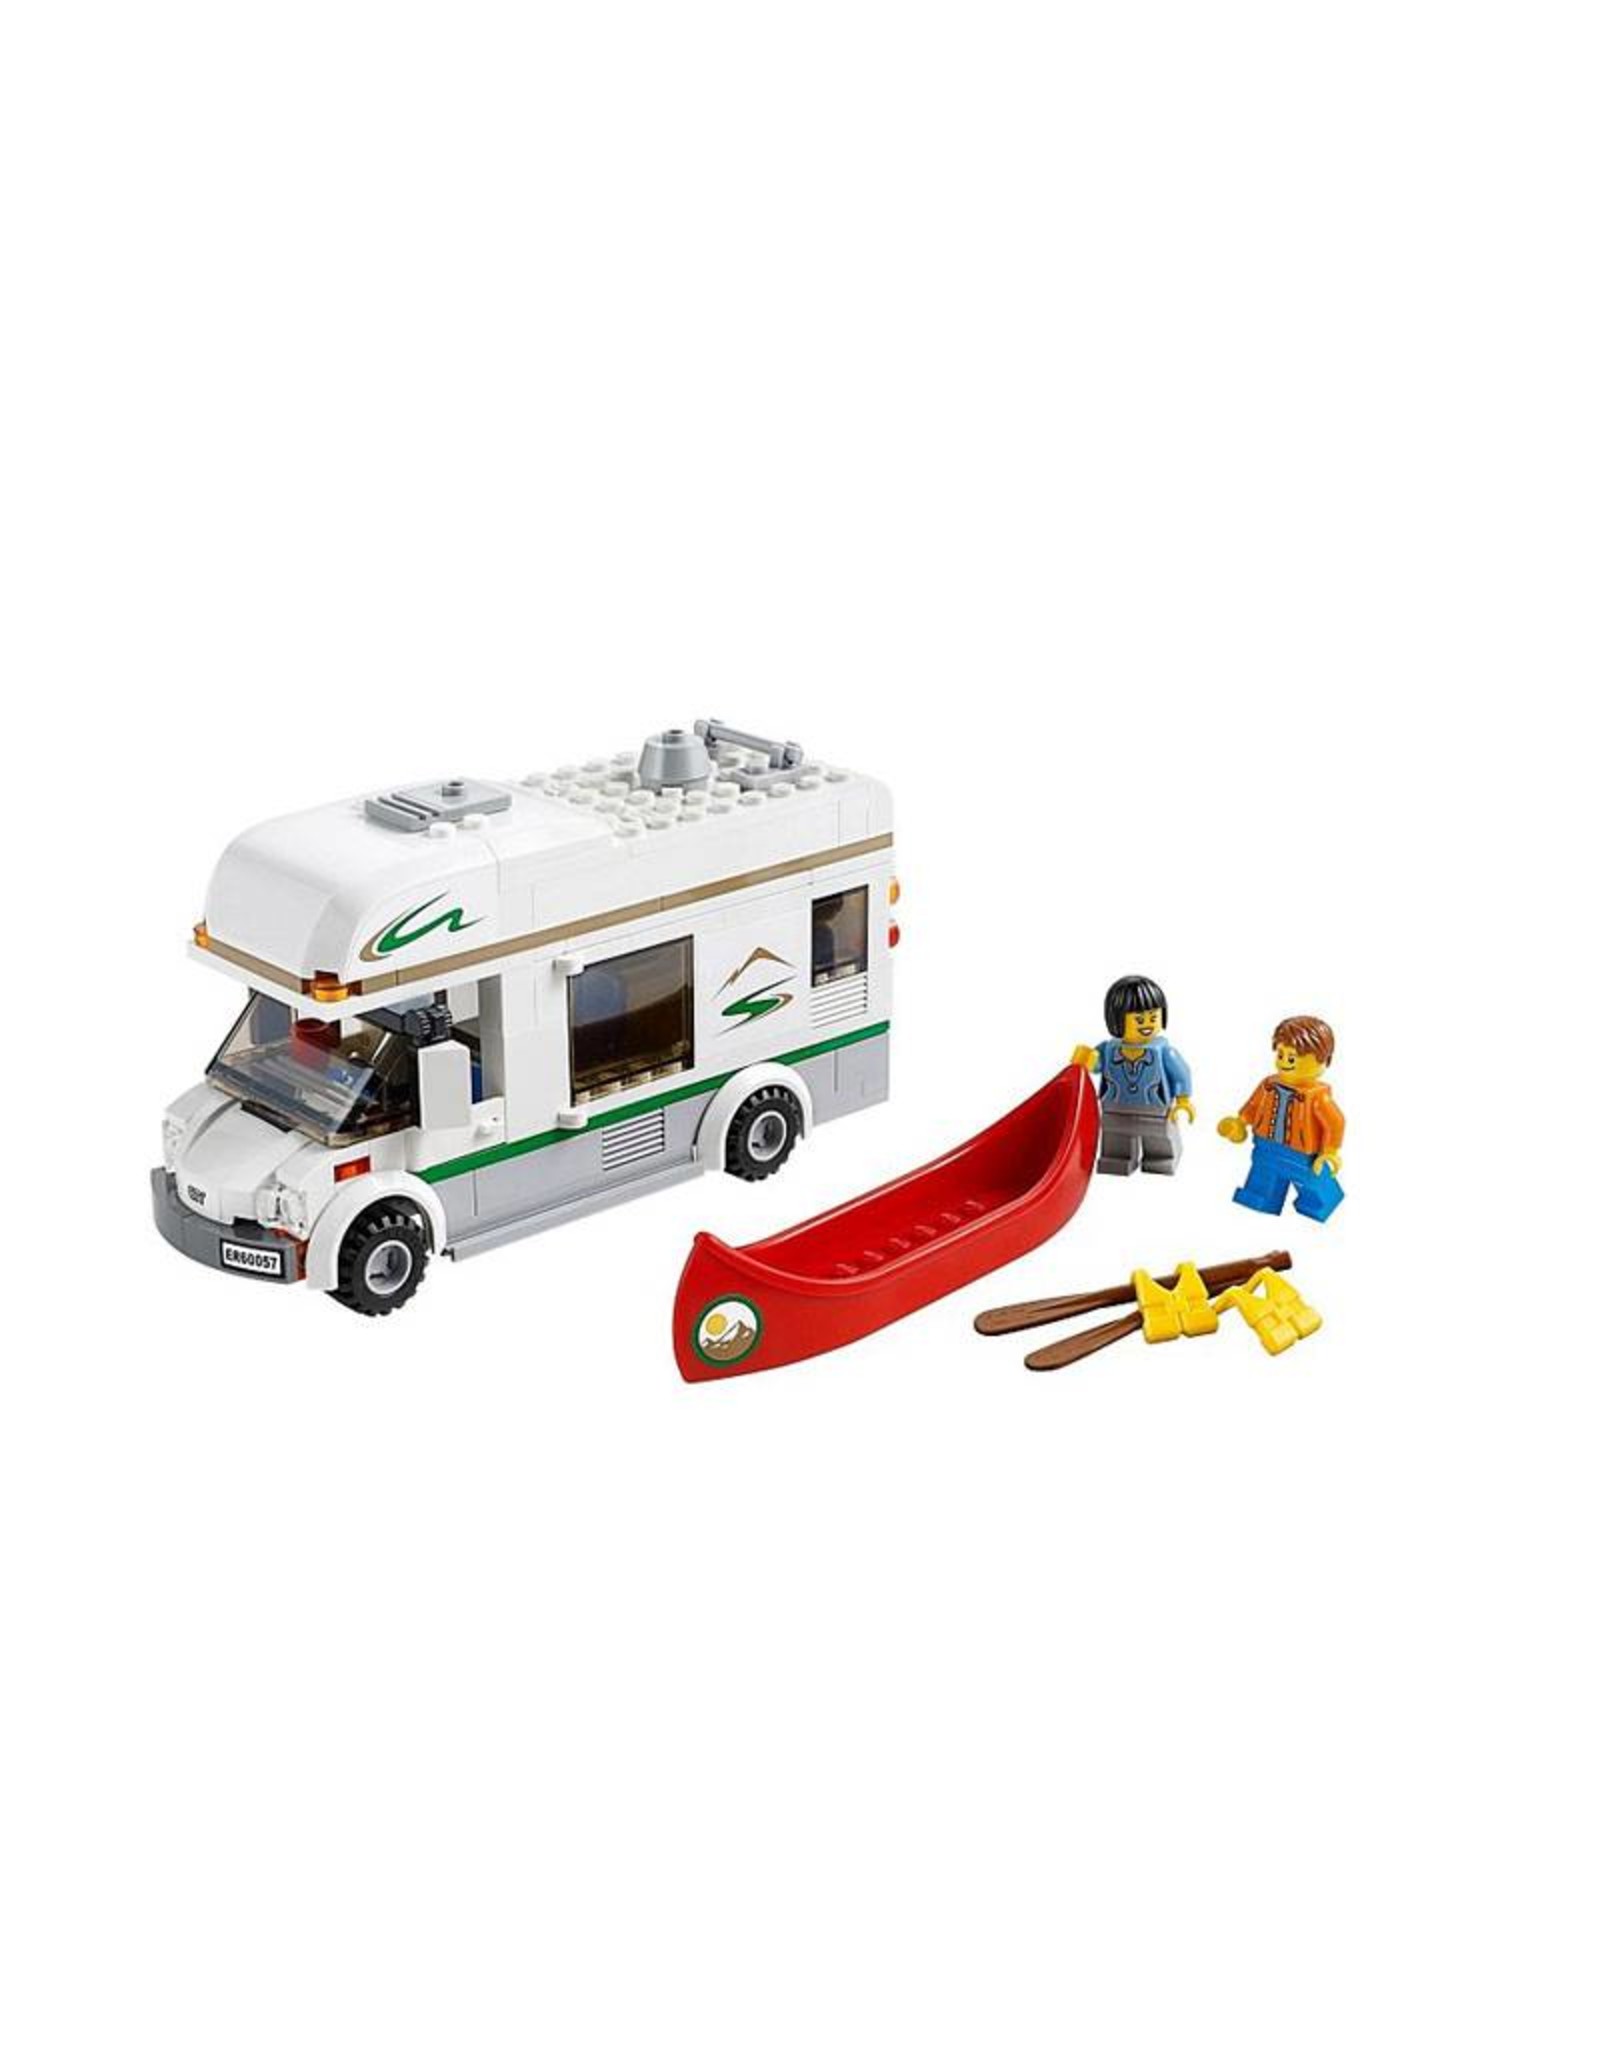 LEGO LEGO 60057 Camper Van CITY